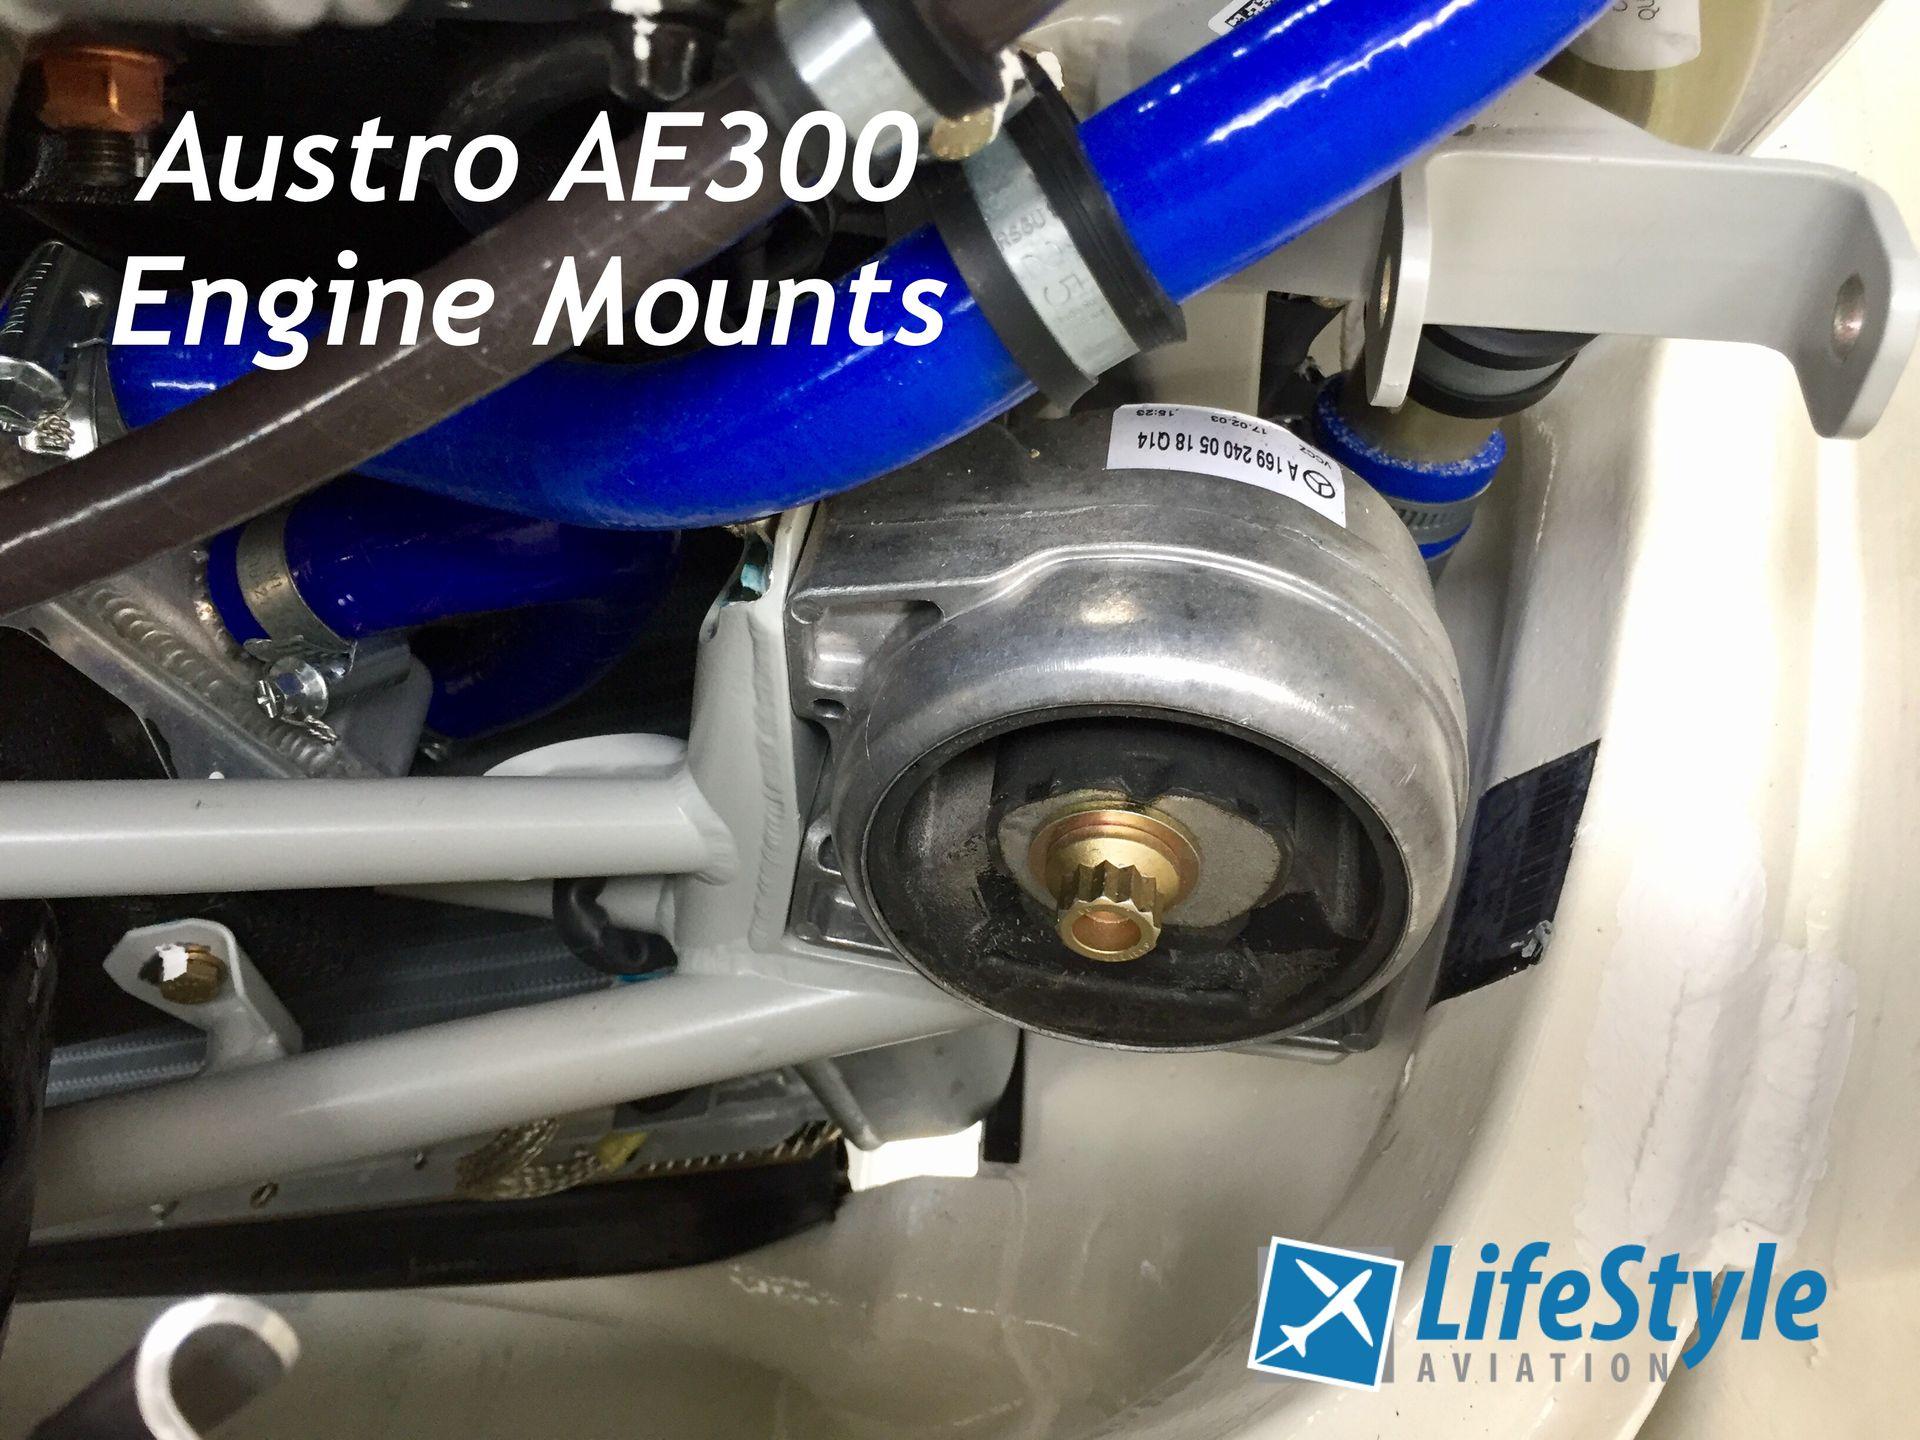 Austro AE300 Engine Mounts